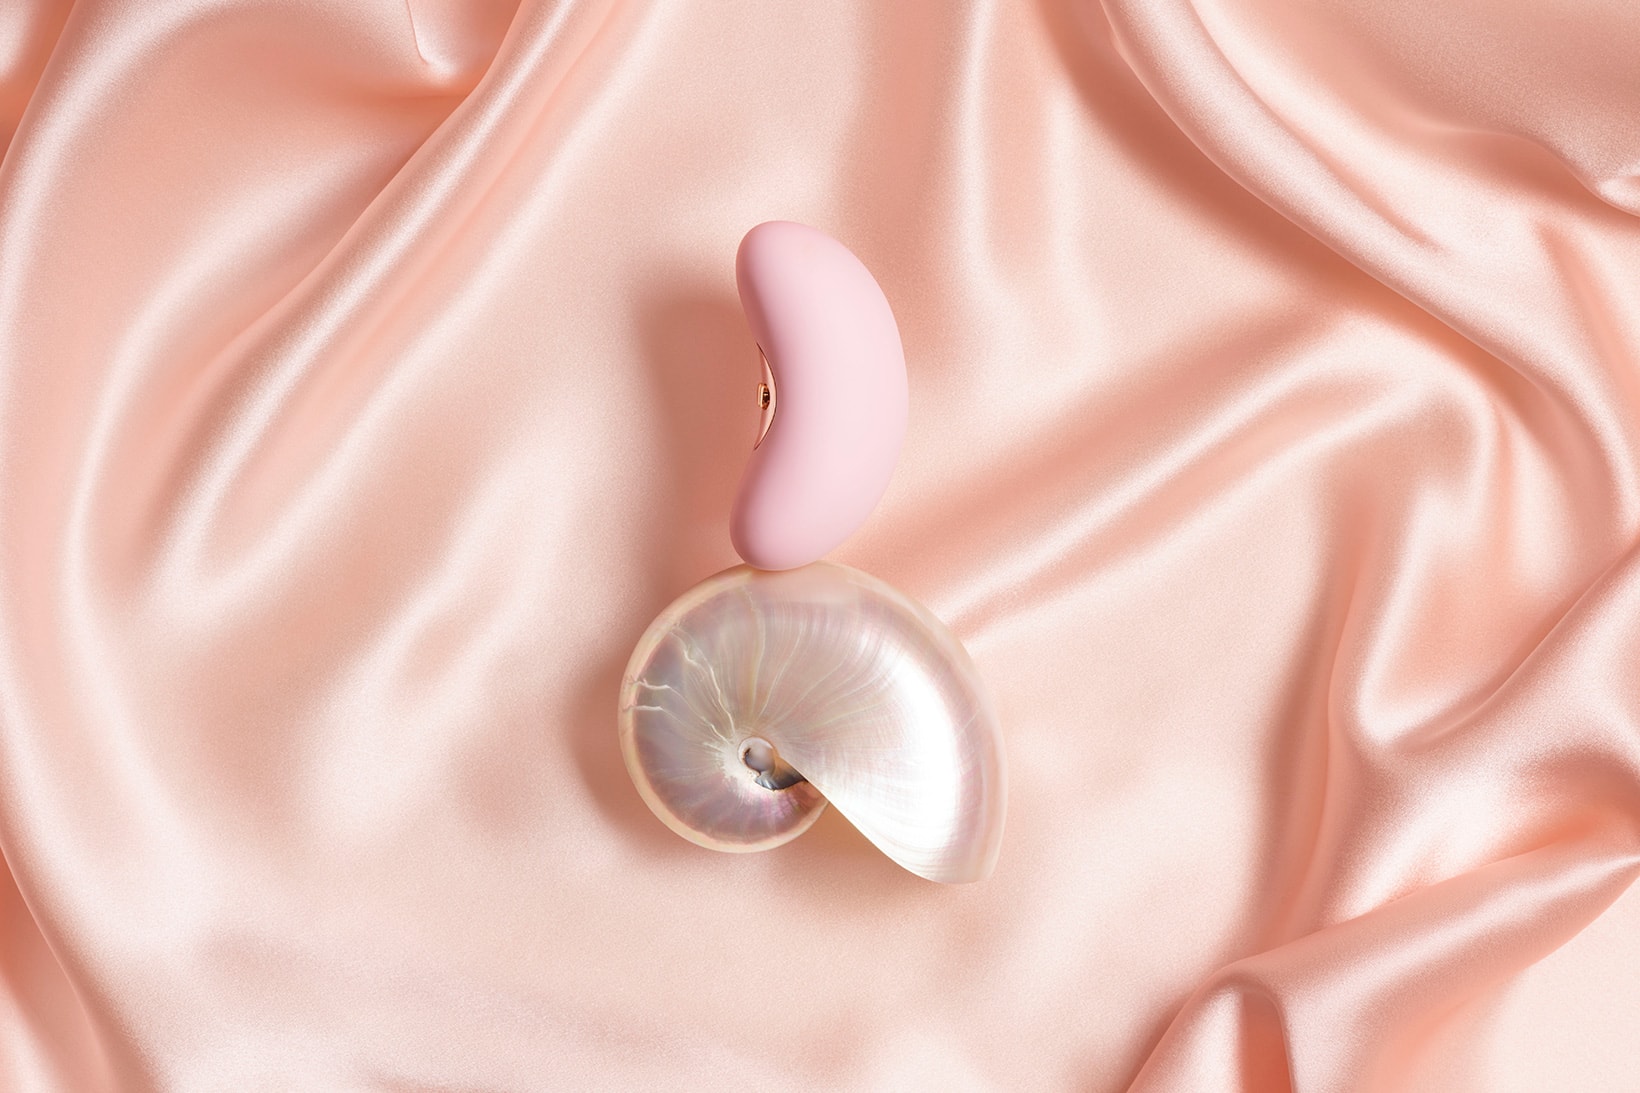 Agent Provocateur Lovehoney Sex Toys Vibrators Collection Pink